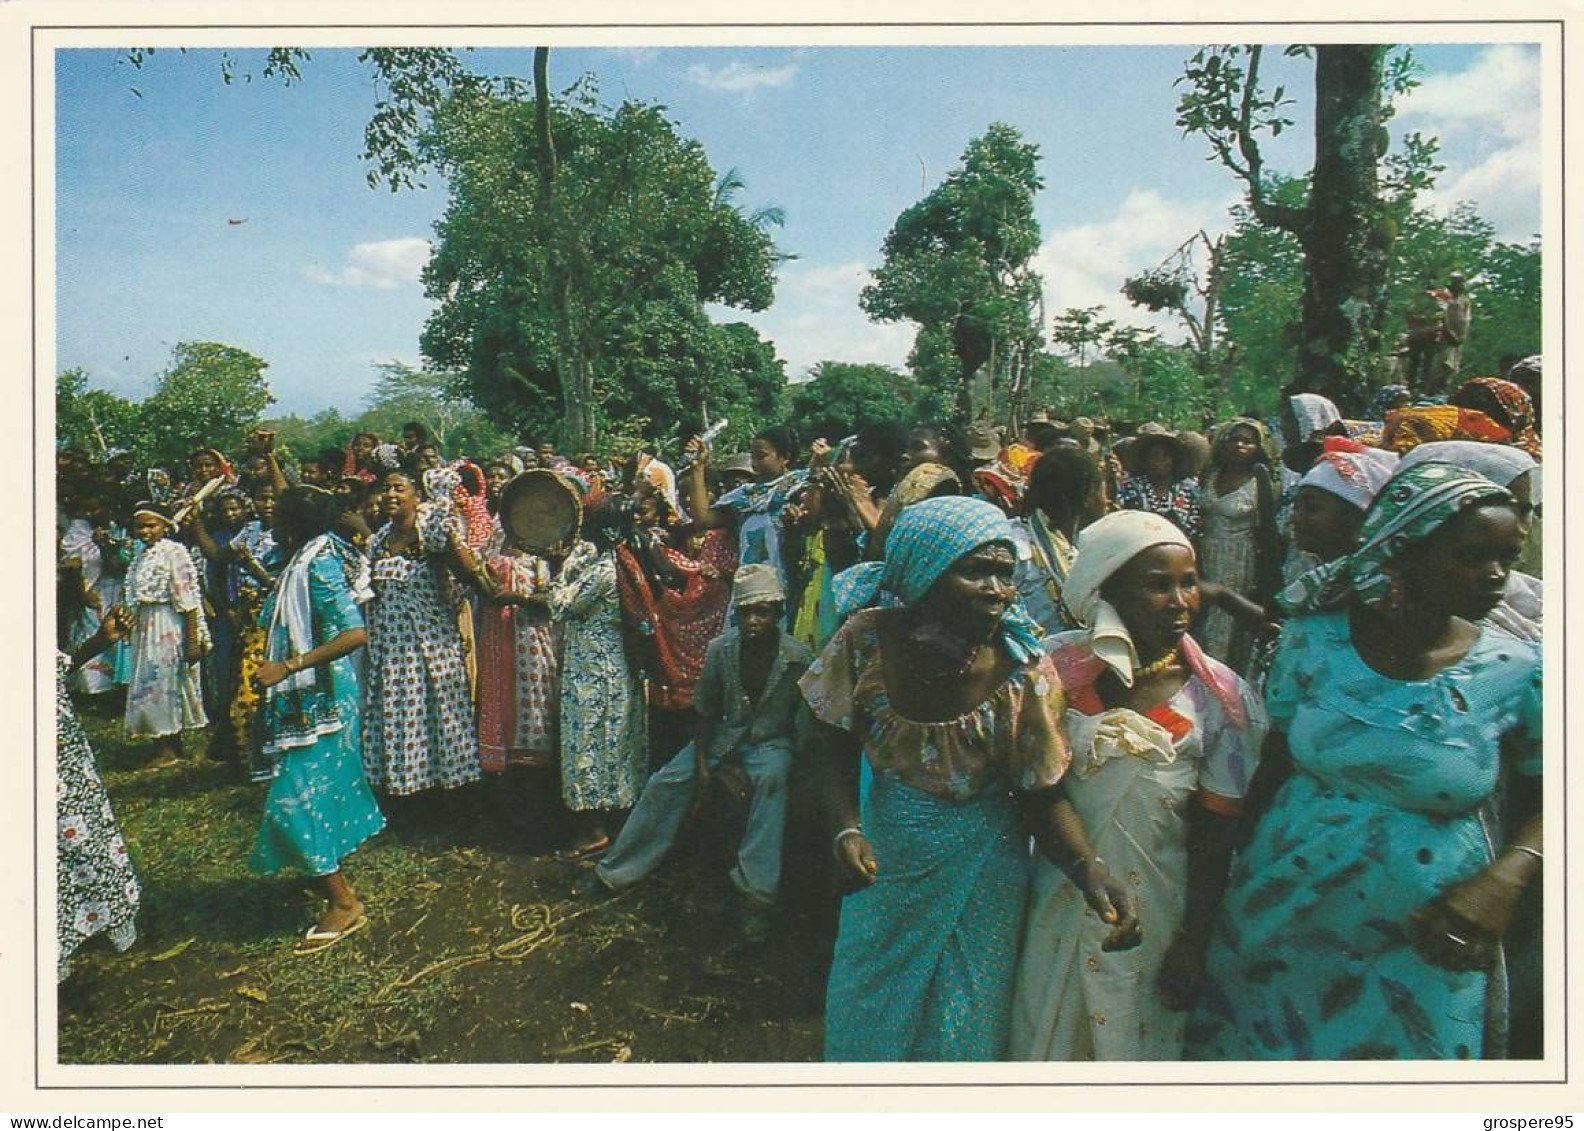 GRANDE COMORES NGAZIDJA DANSE DU PILON WADAHA + FEMMES EN FETE + PLAGE ET HOTEL ITSANDRA 1988 - Comoren